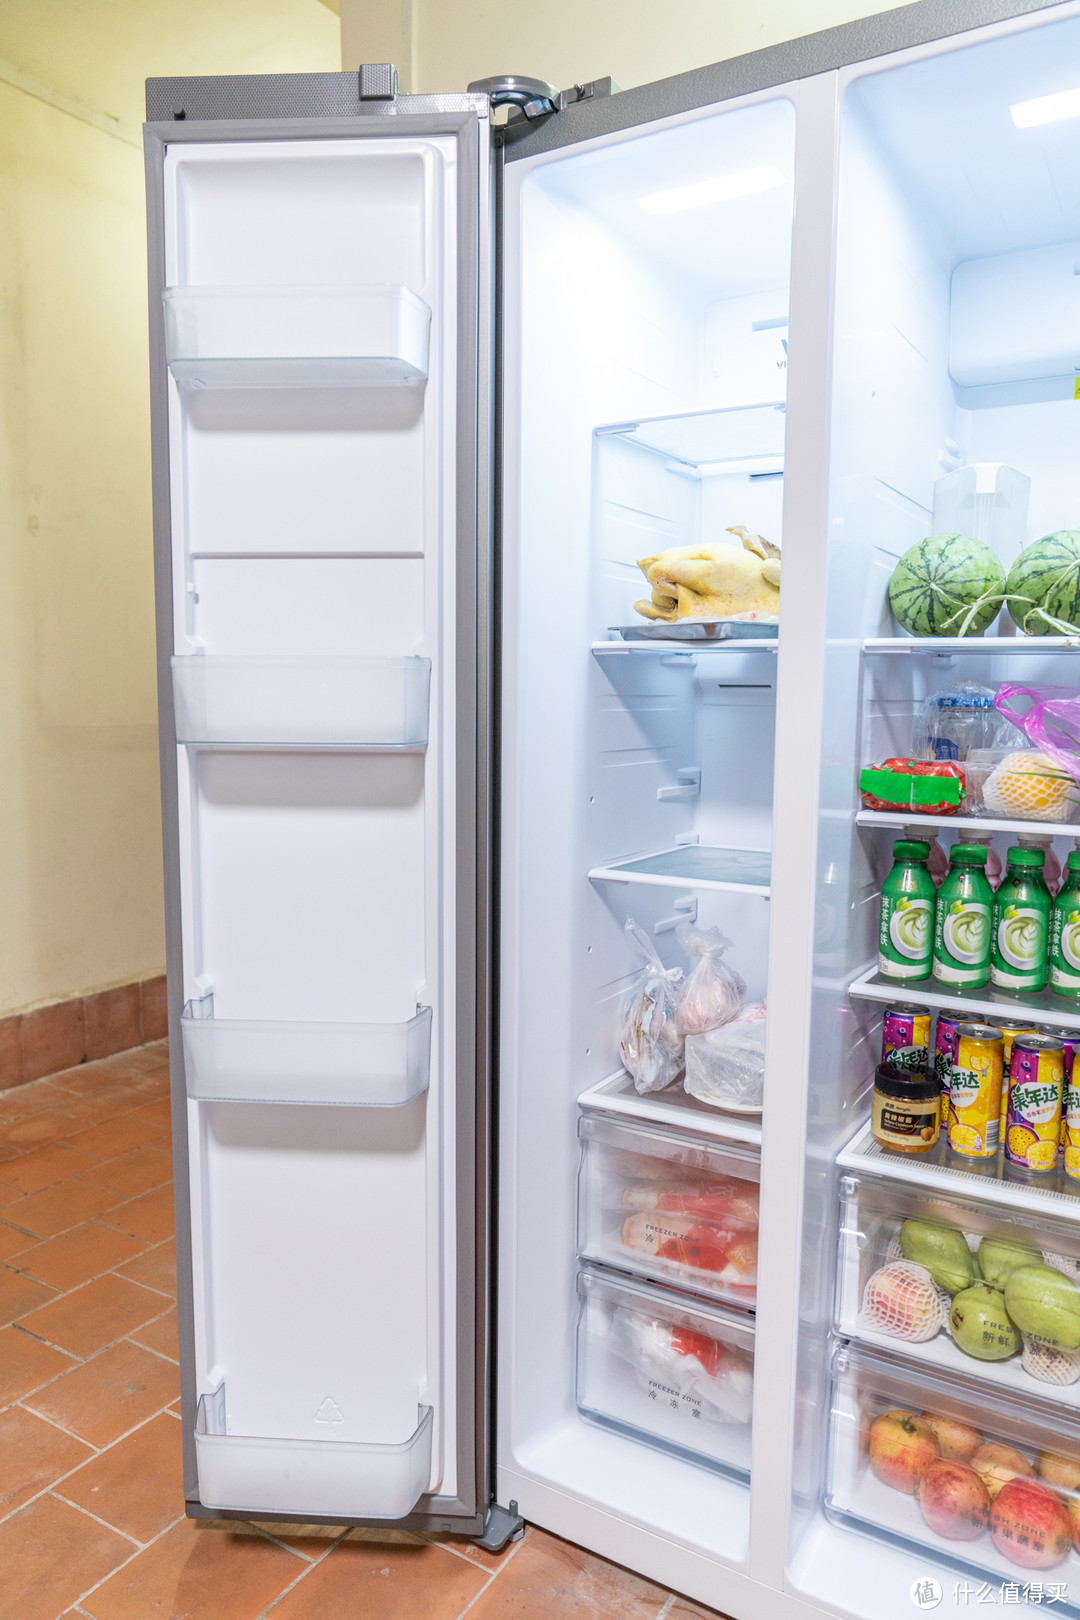 省电静音实用，性价比的冰箱本该如此：云米 598L 双变频对开门冰箱评测